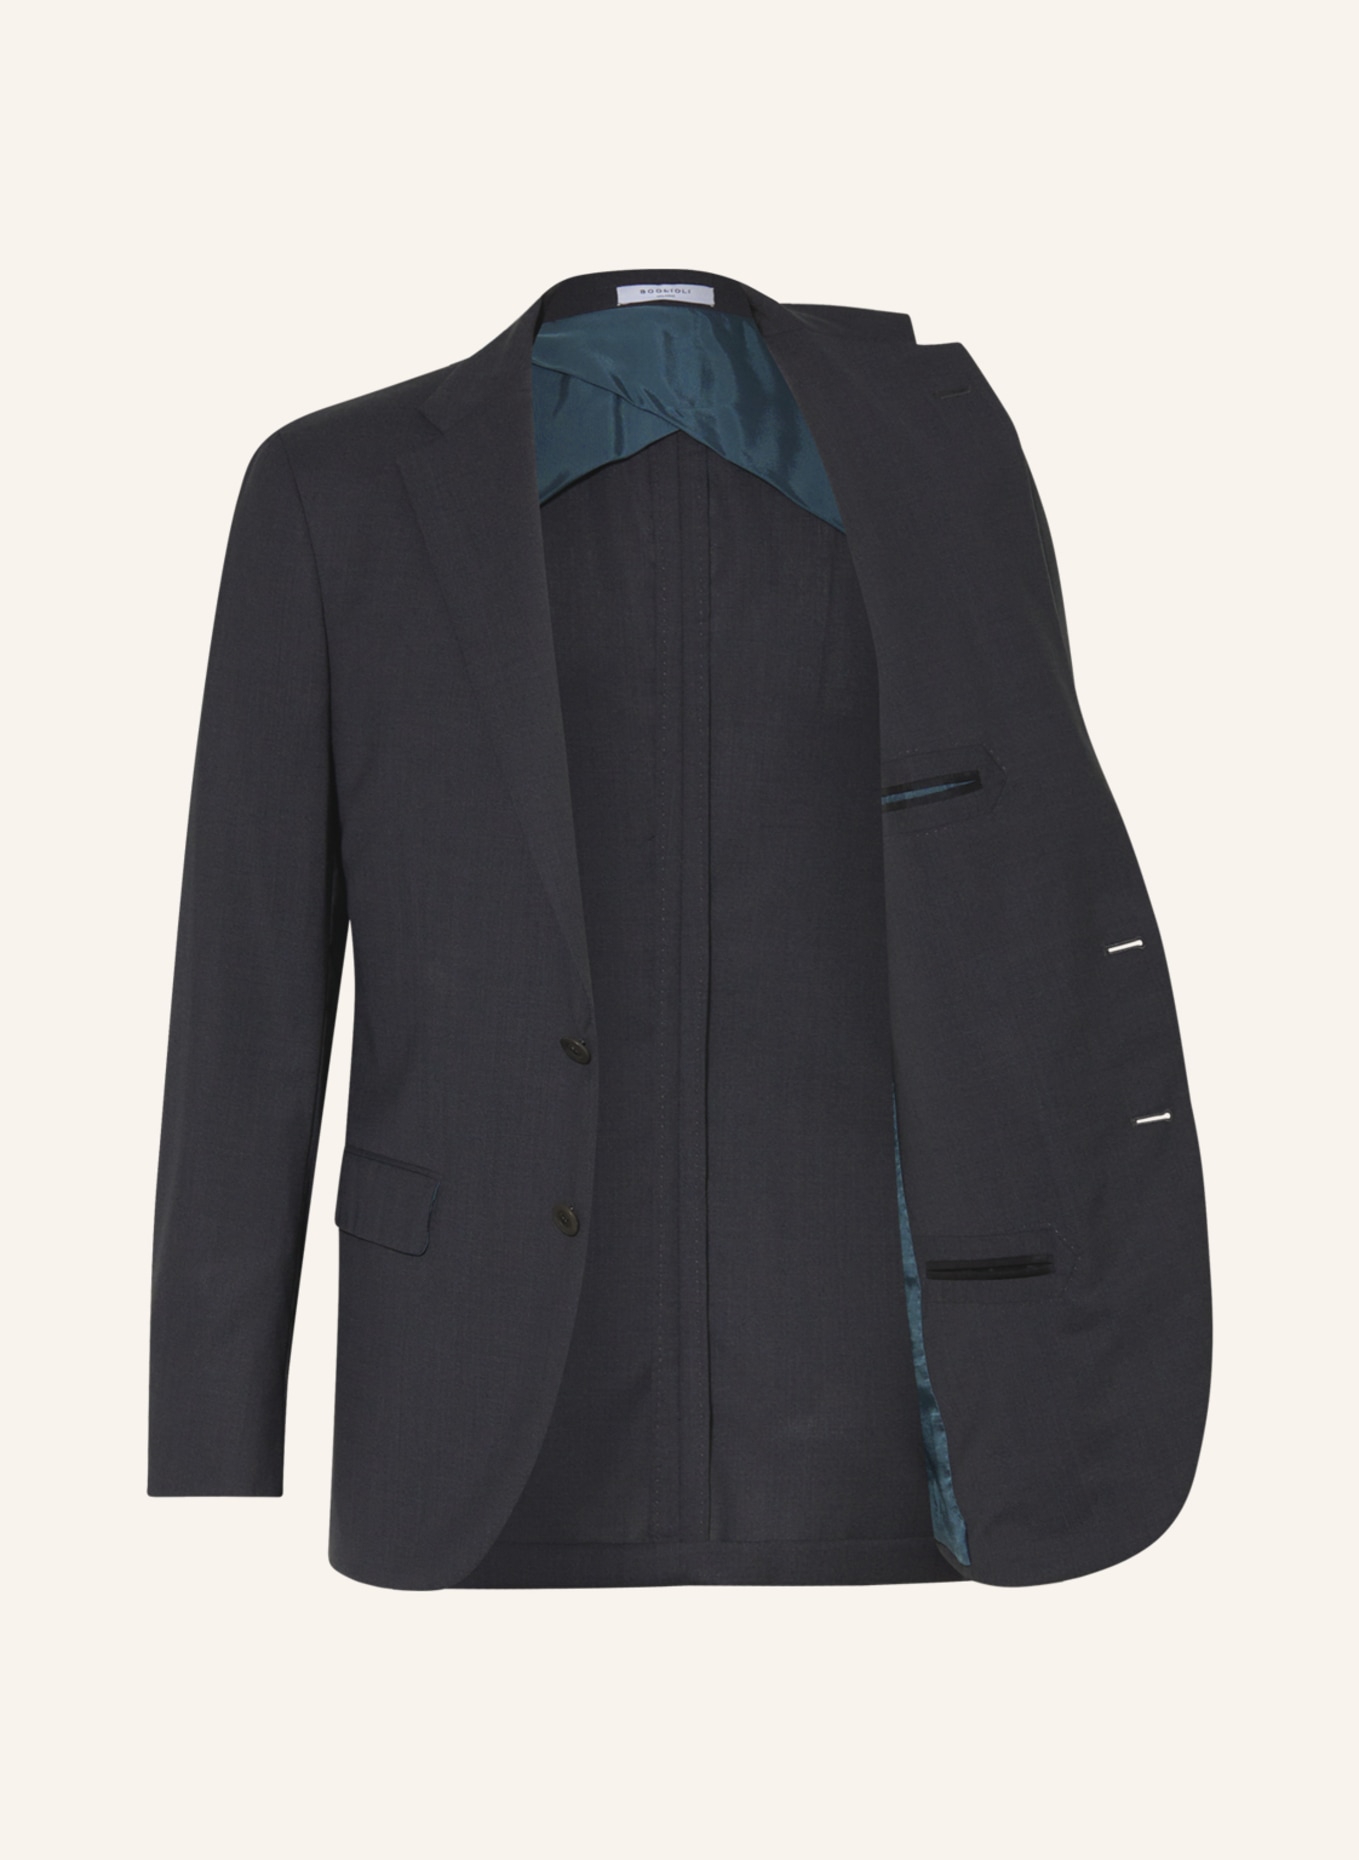 BOGLIOLI Suit jacket extra slim fit, Color: 890 Anthra (Image 5)